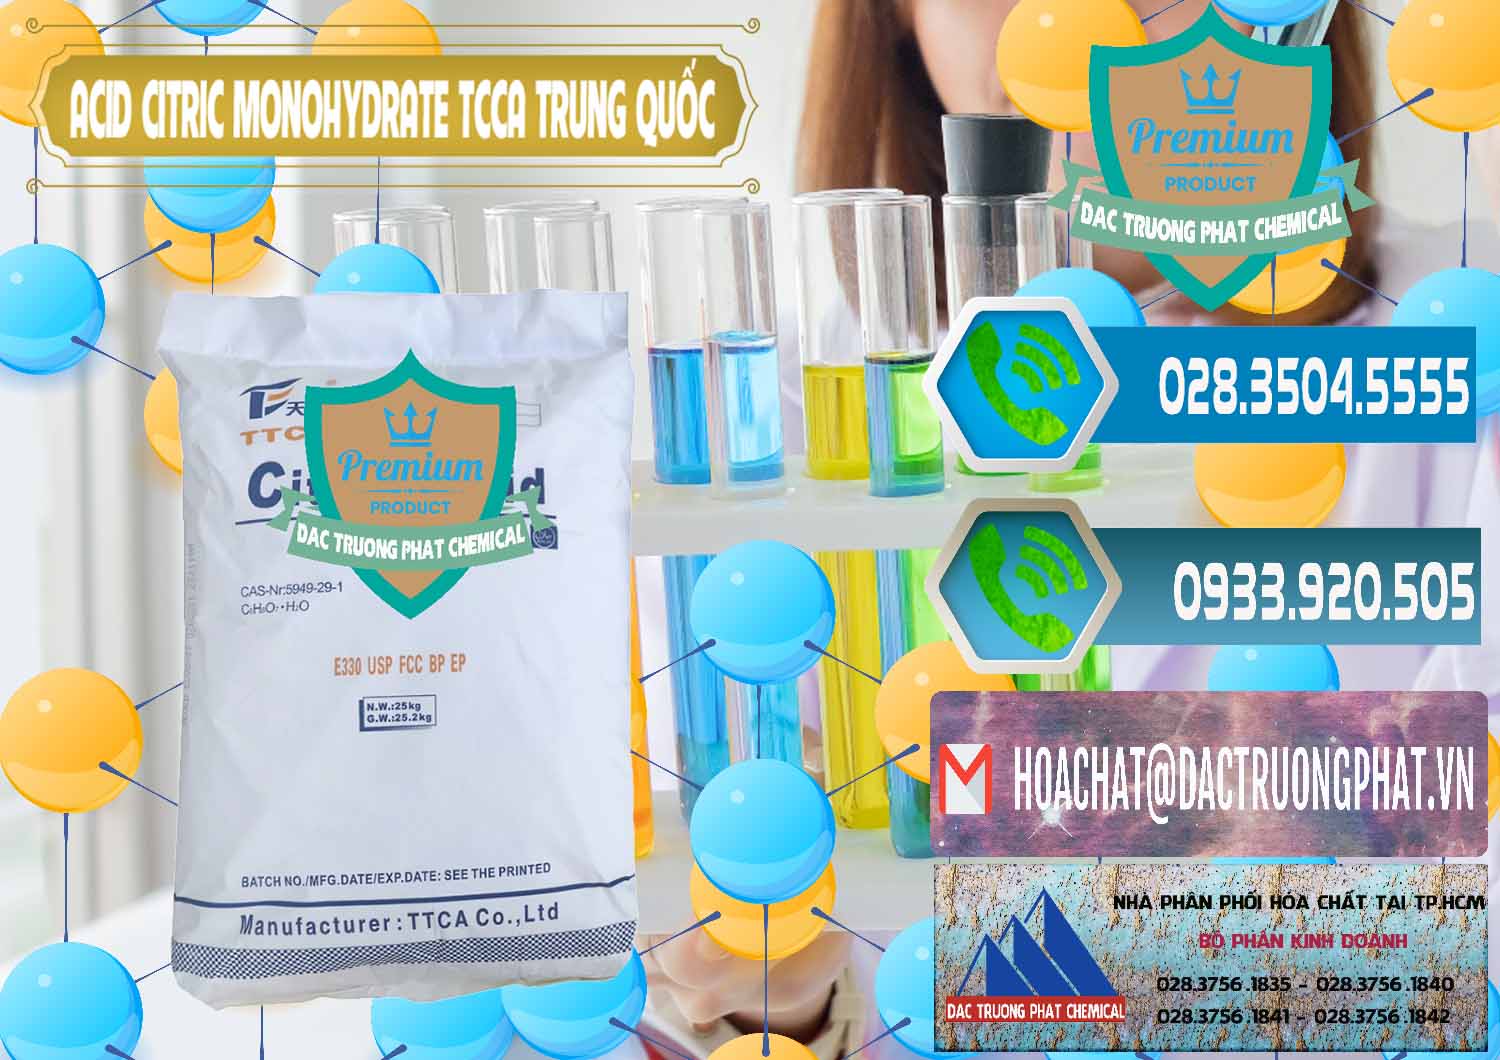 Cty chuyên bán & cung ứng Acid Citric - Axit Citric Monohydrate TCCA Trung Quốc China - 0441 - Chuyên cung cấp _ bán hóa chất tại TP.HCM - congtyhoachat.net